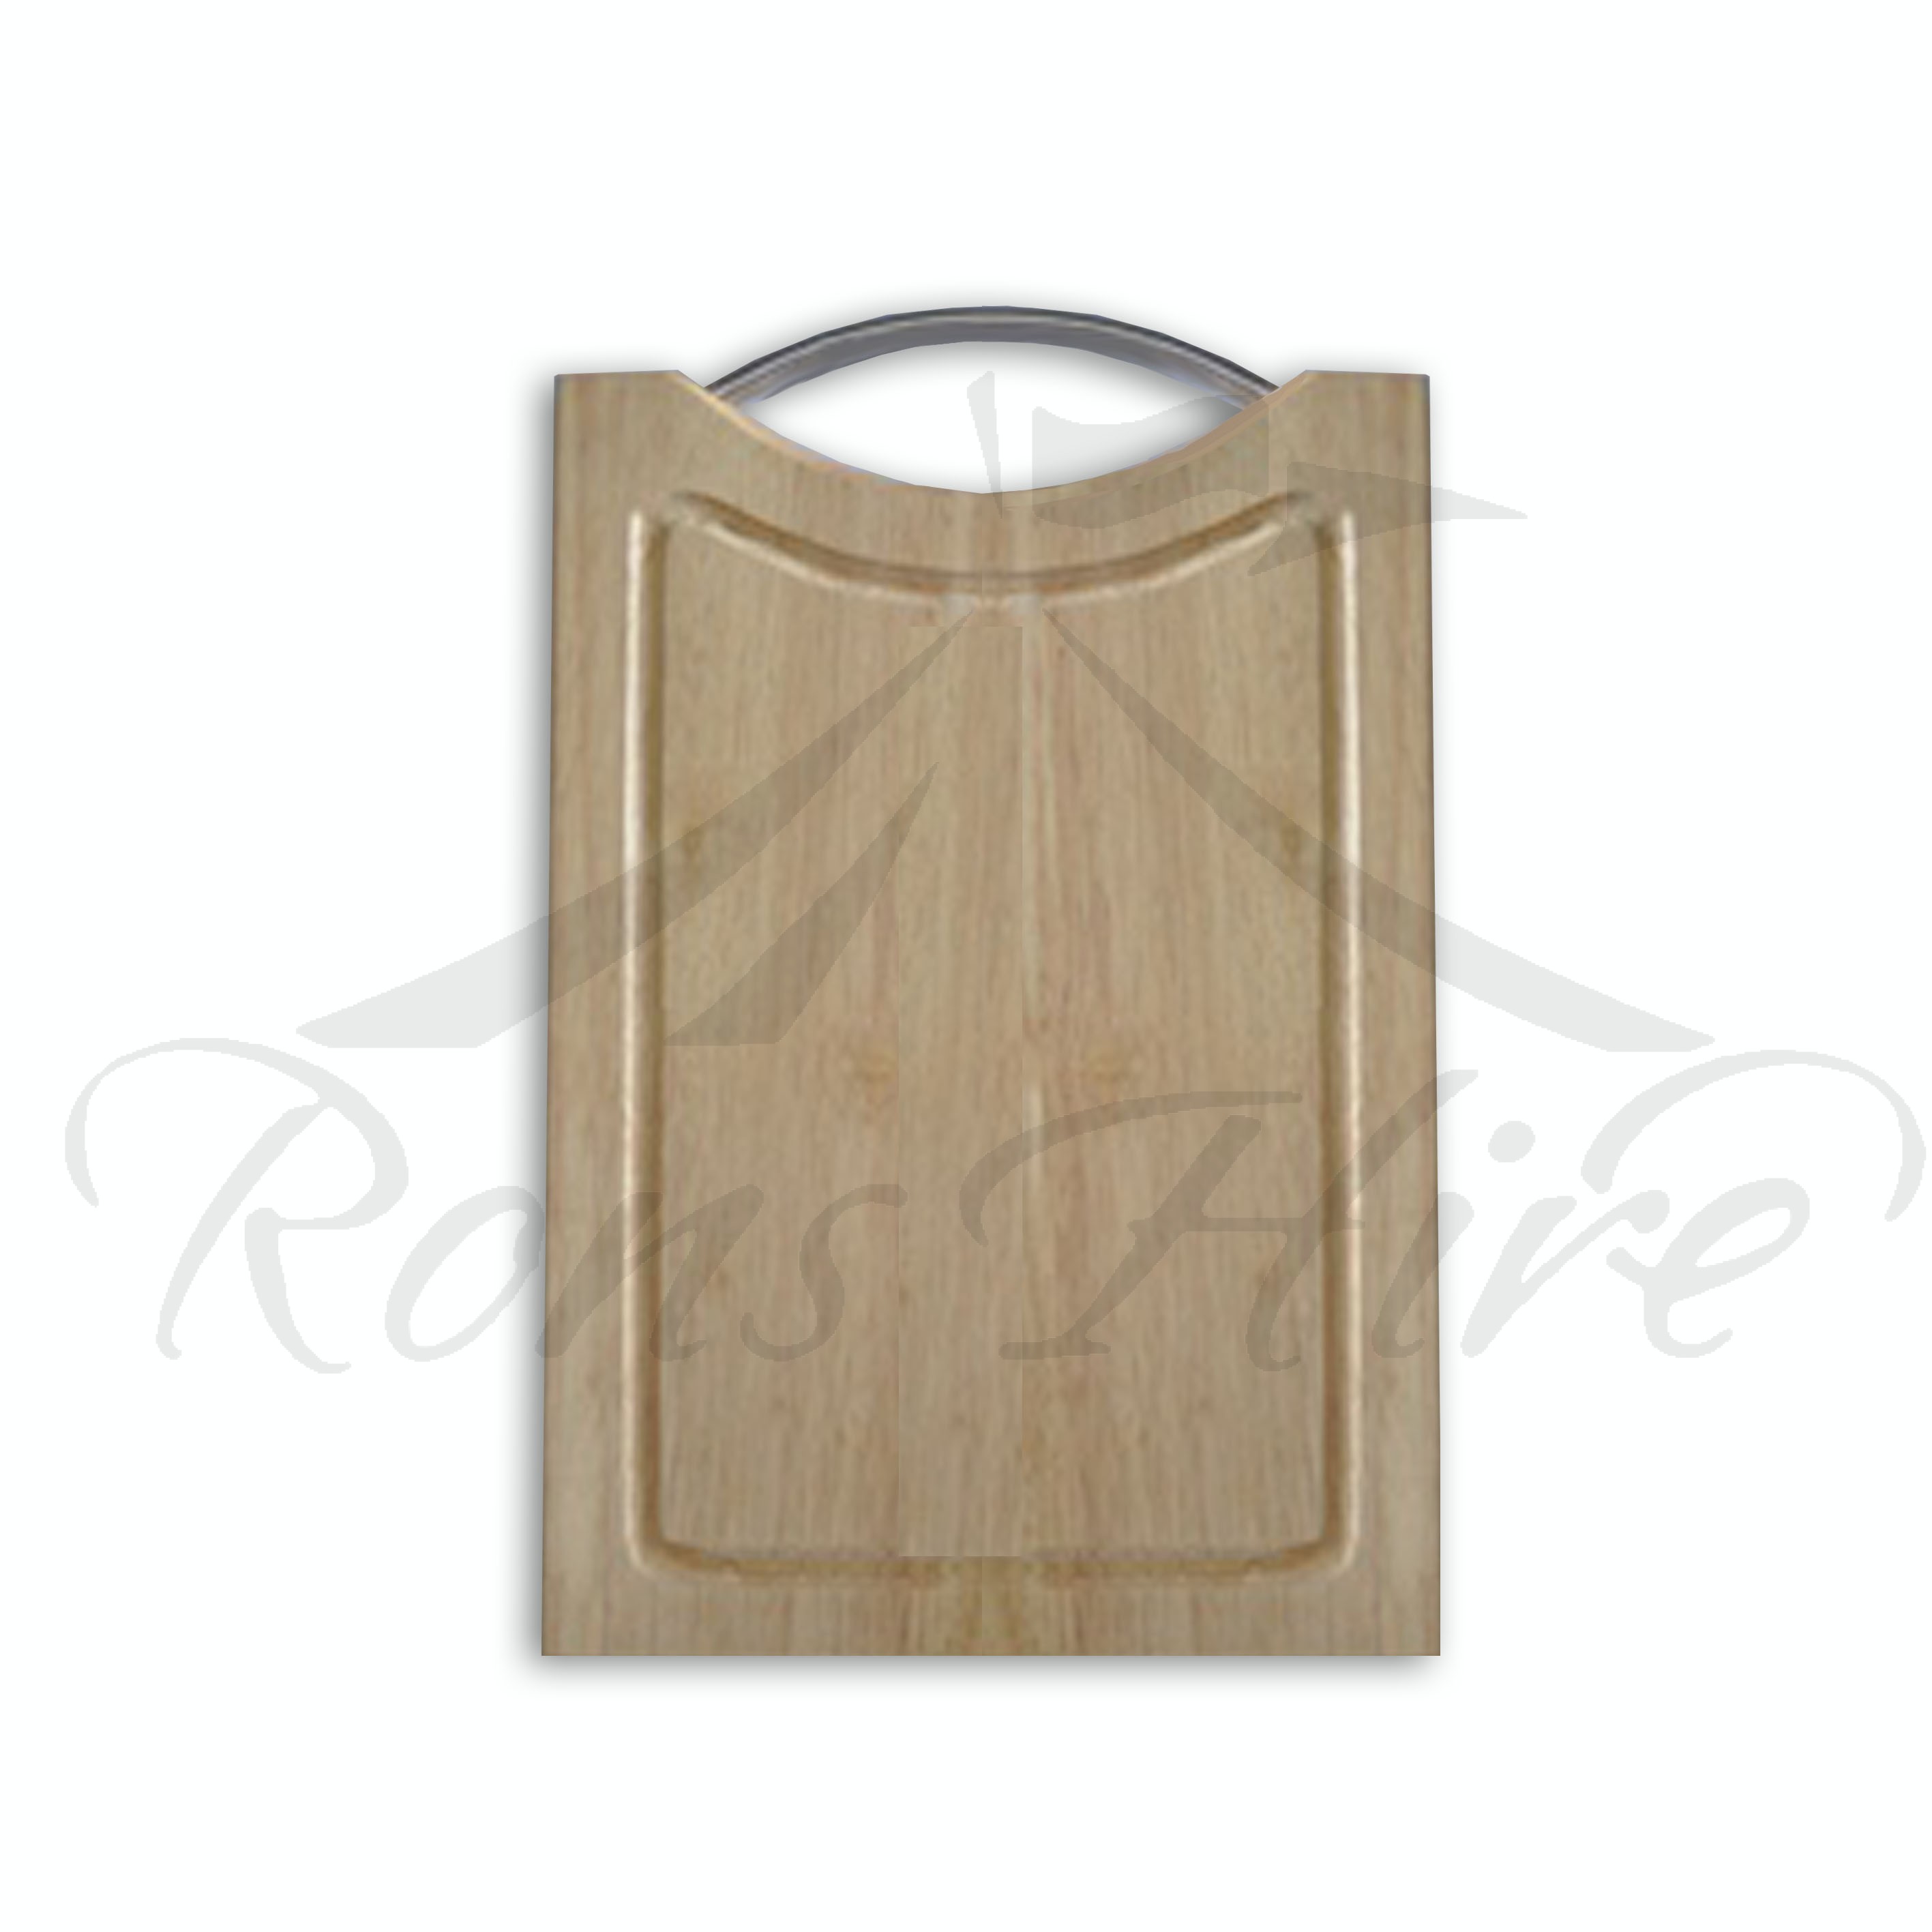 Board - Wooden 30cm Square Cheese Board